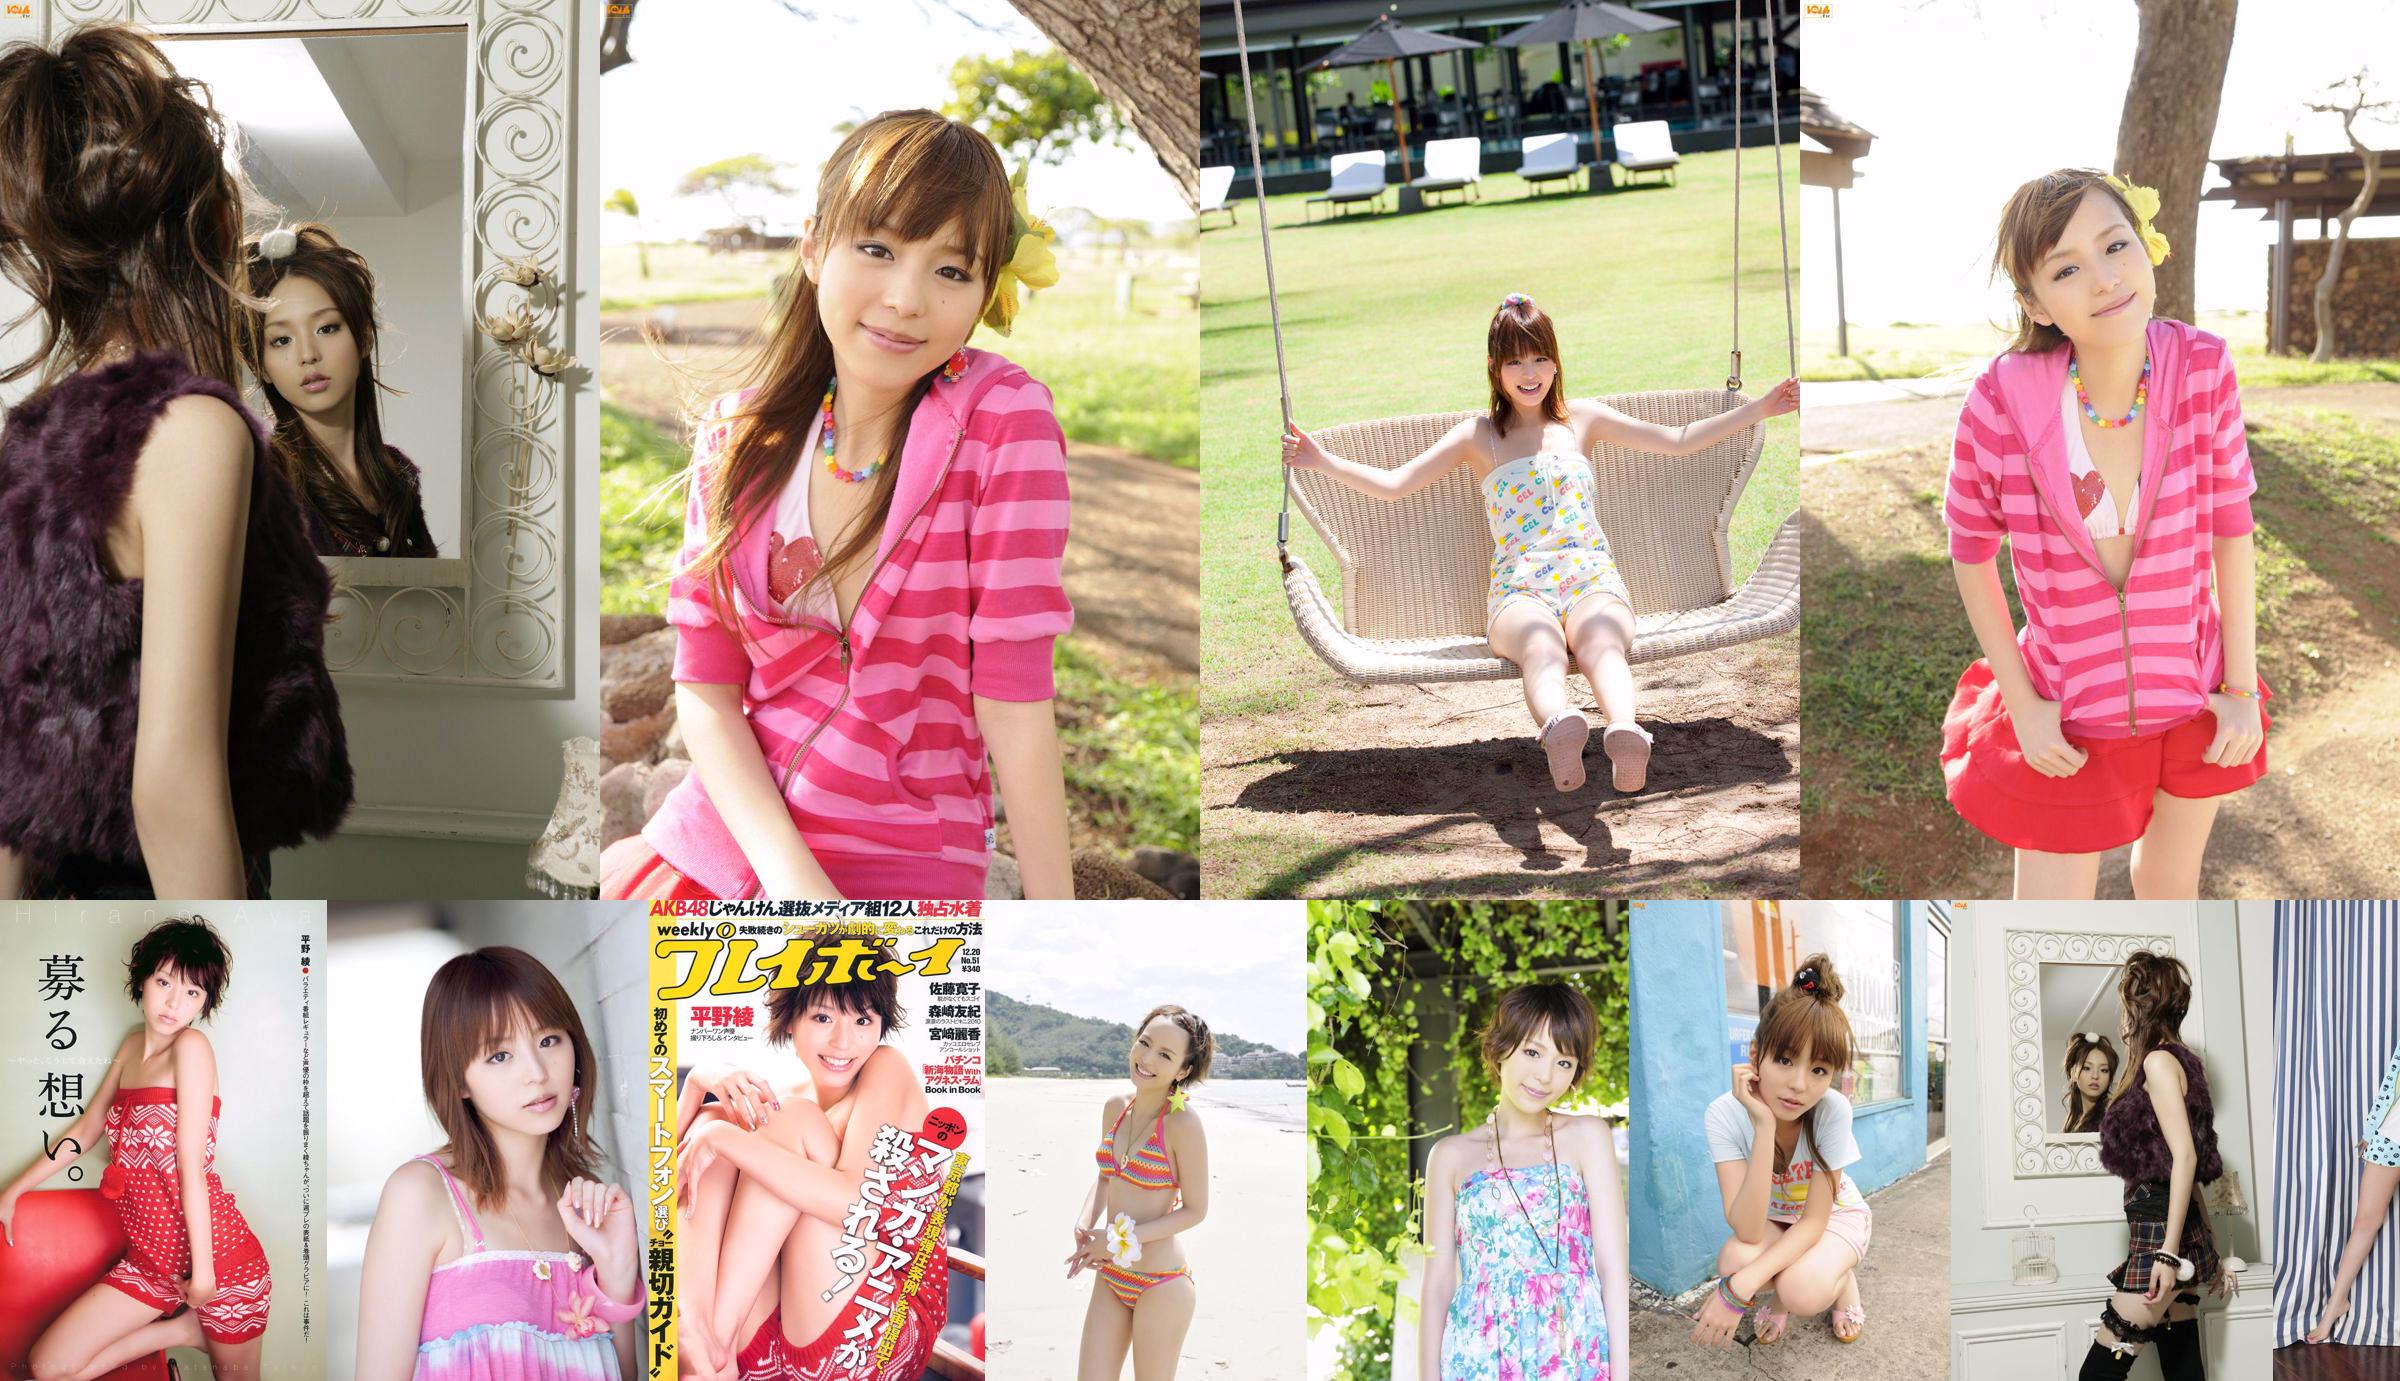 Aya Hirano AKB48 Hiroko Sato Mai Nishida Yuki Morisaki Agnes Lum [Weekly Playboy] 2010 No.51 Photo Magazine No.1fe14f Trang 2